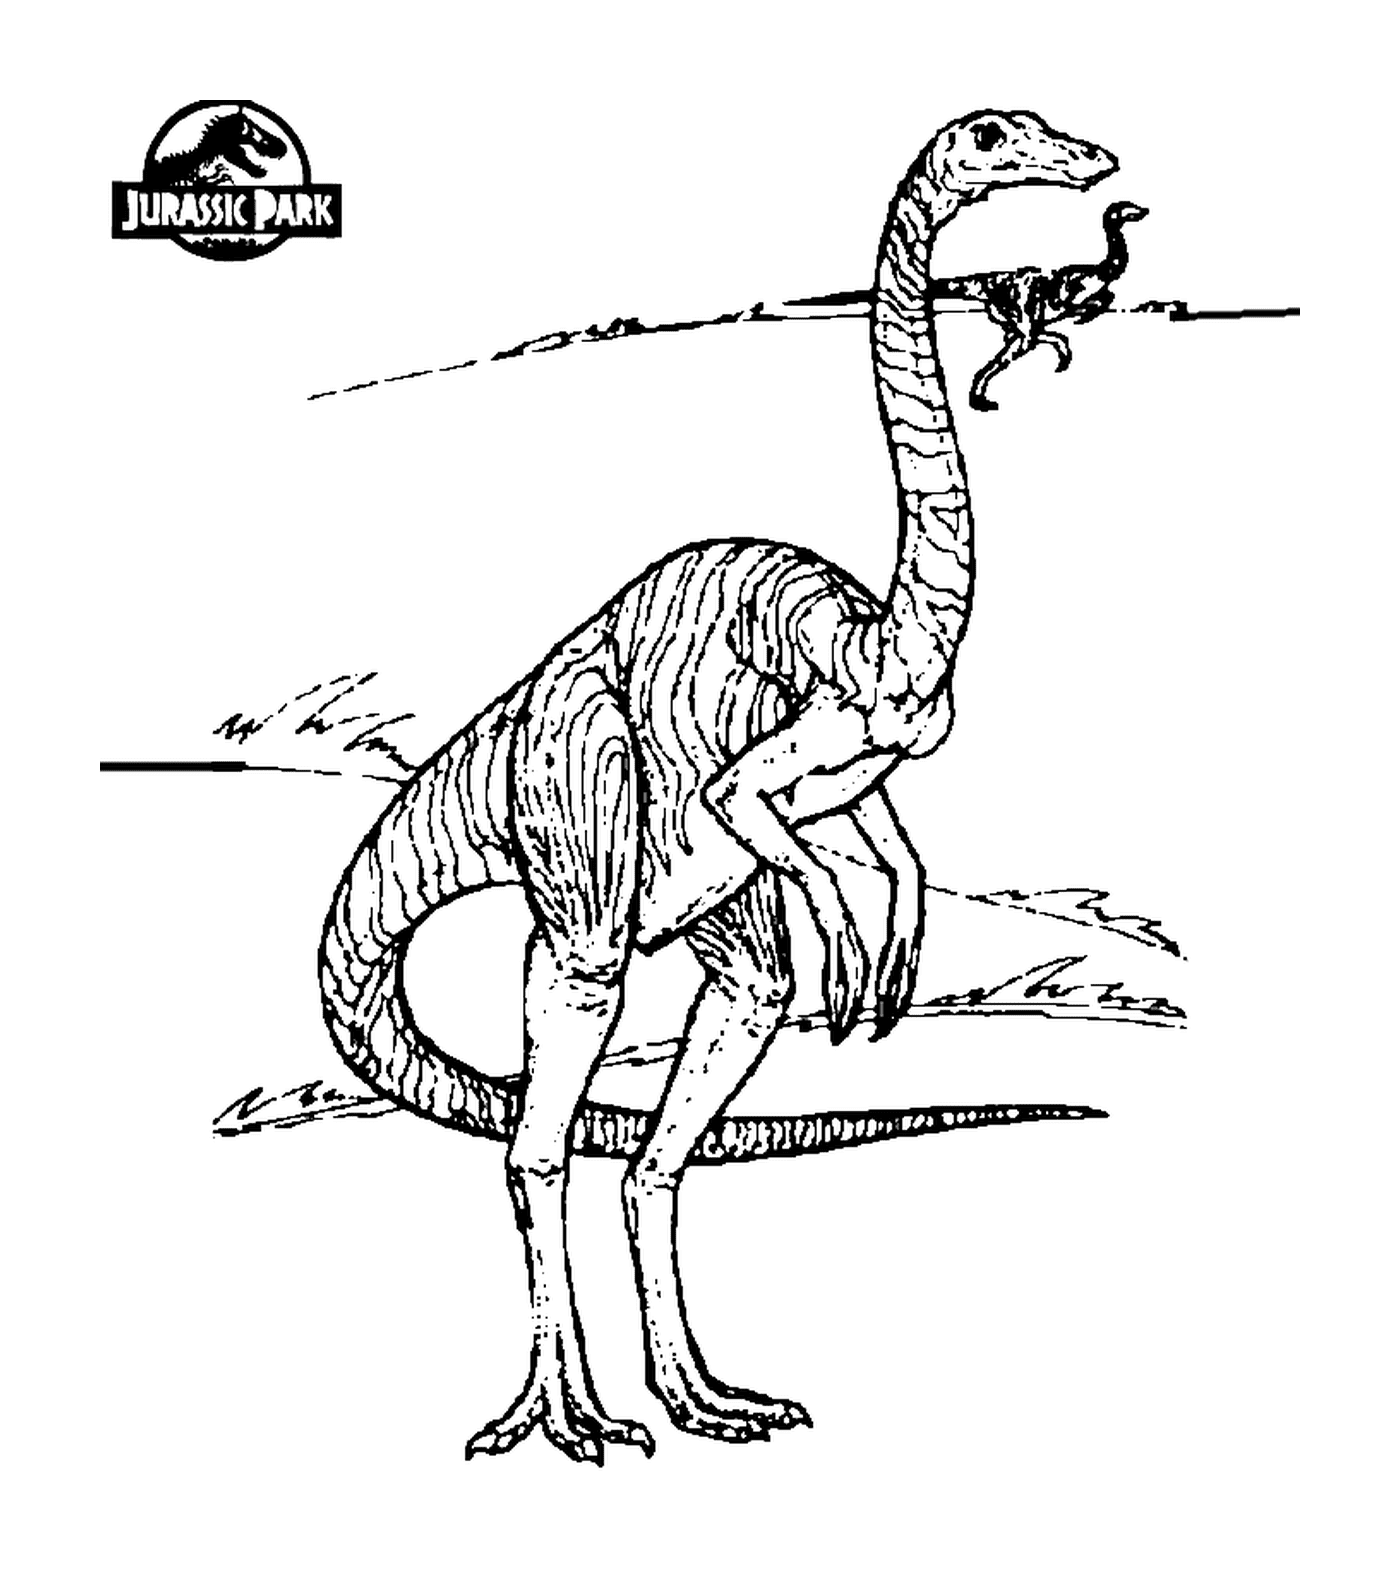  Jurassic Park, l'arte dell'illustrazione 